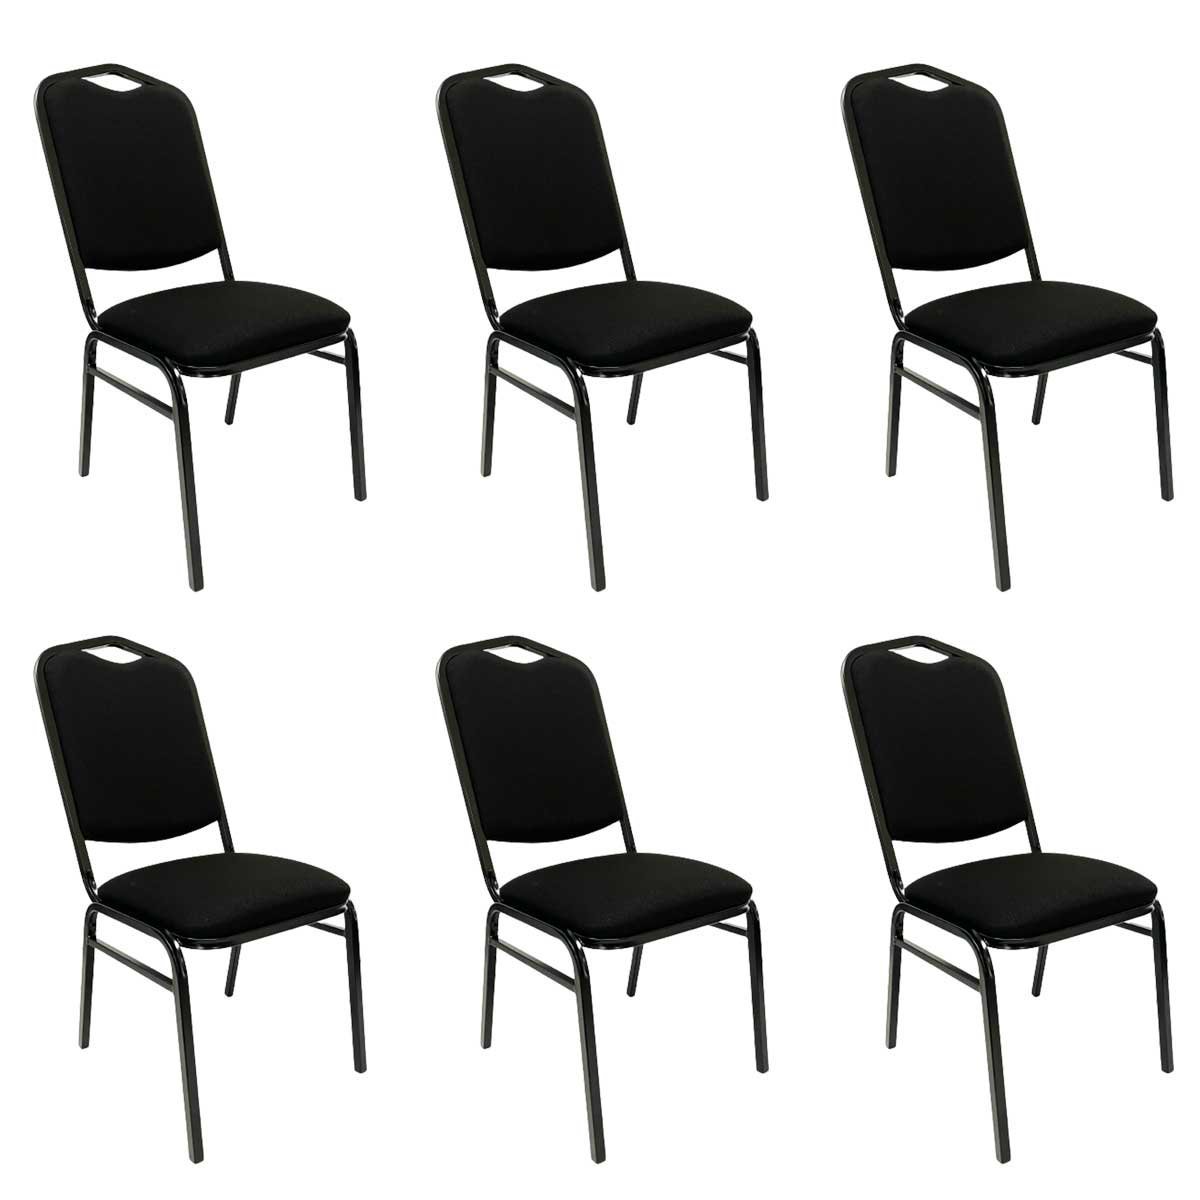 Kit 6 Cadeiras para Hotel Auditório Igreja Restaurante Eventos com Reforço Empilhável cor Preta Polt